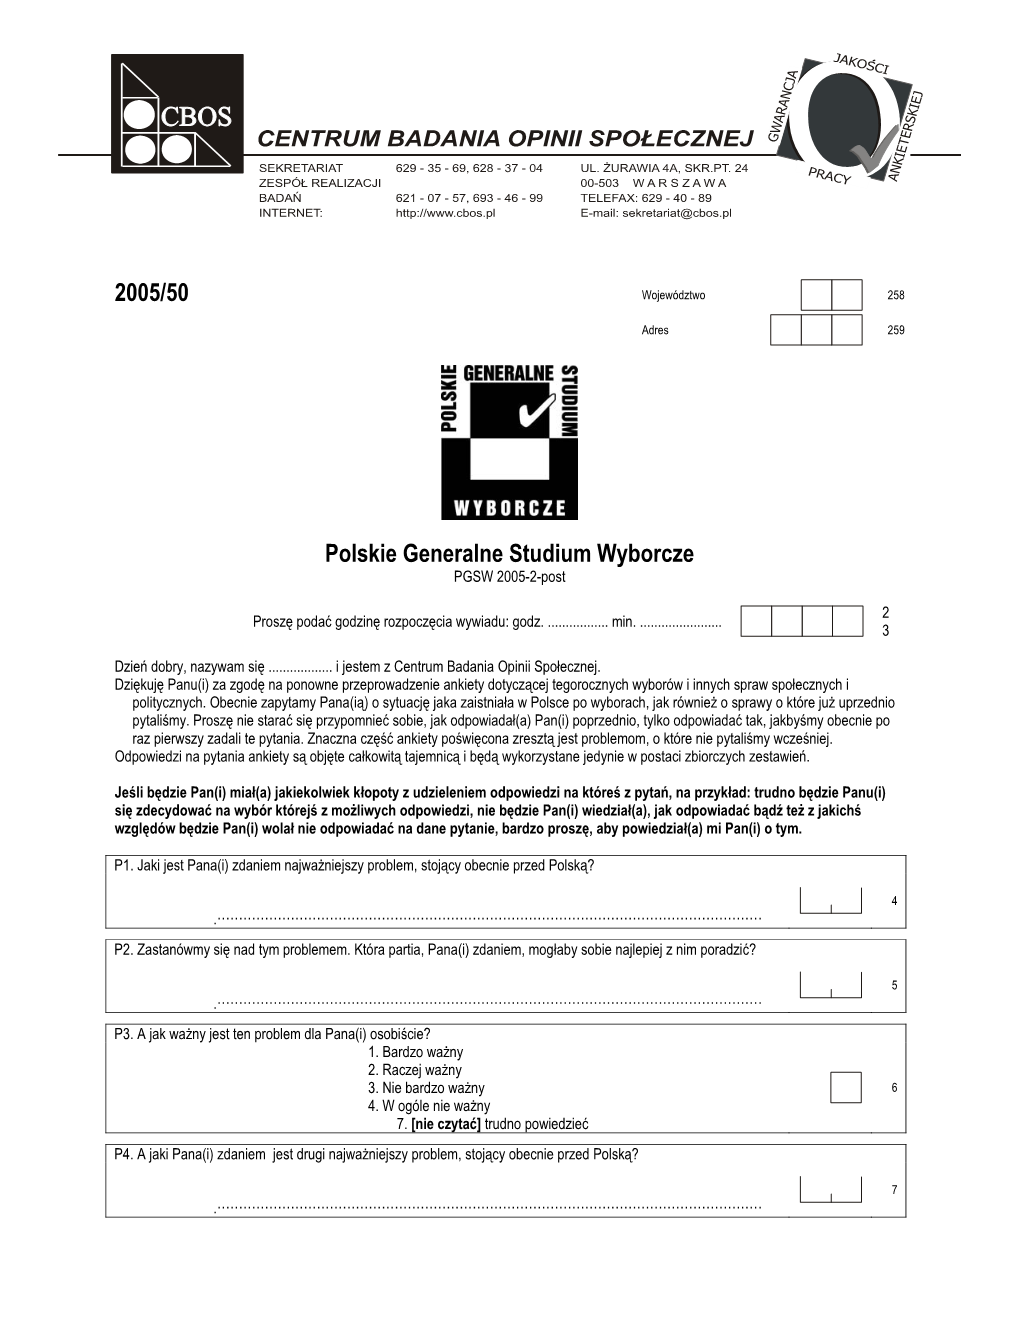 2005/50 Polskie Generalne Studium Wyborcze